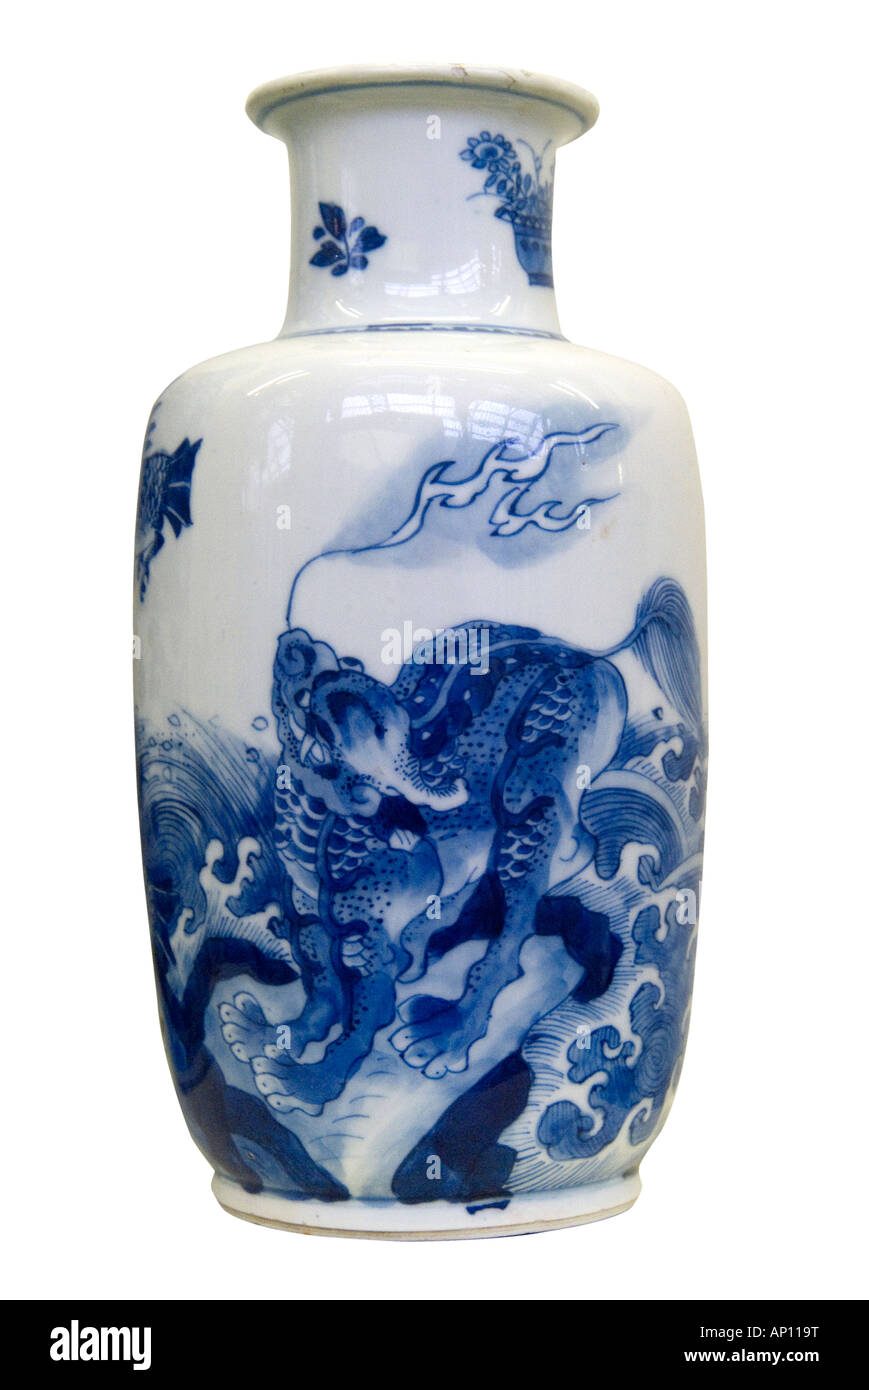 La dinastia Ming dragon vaso di porcellana cinese in ceramica fire feroce simmetria equilibrio grazia armonia a nord-est della Cina Asia Manchuri asiatica Foto Stock